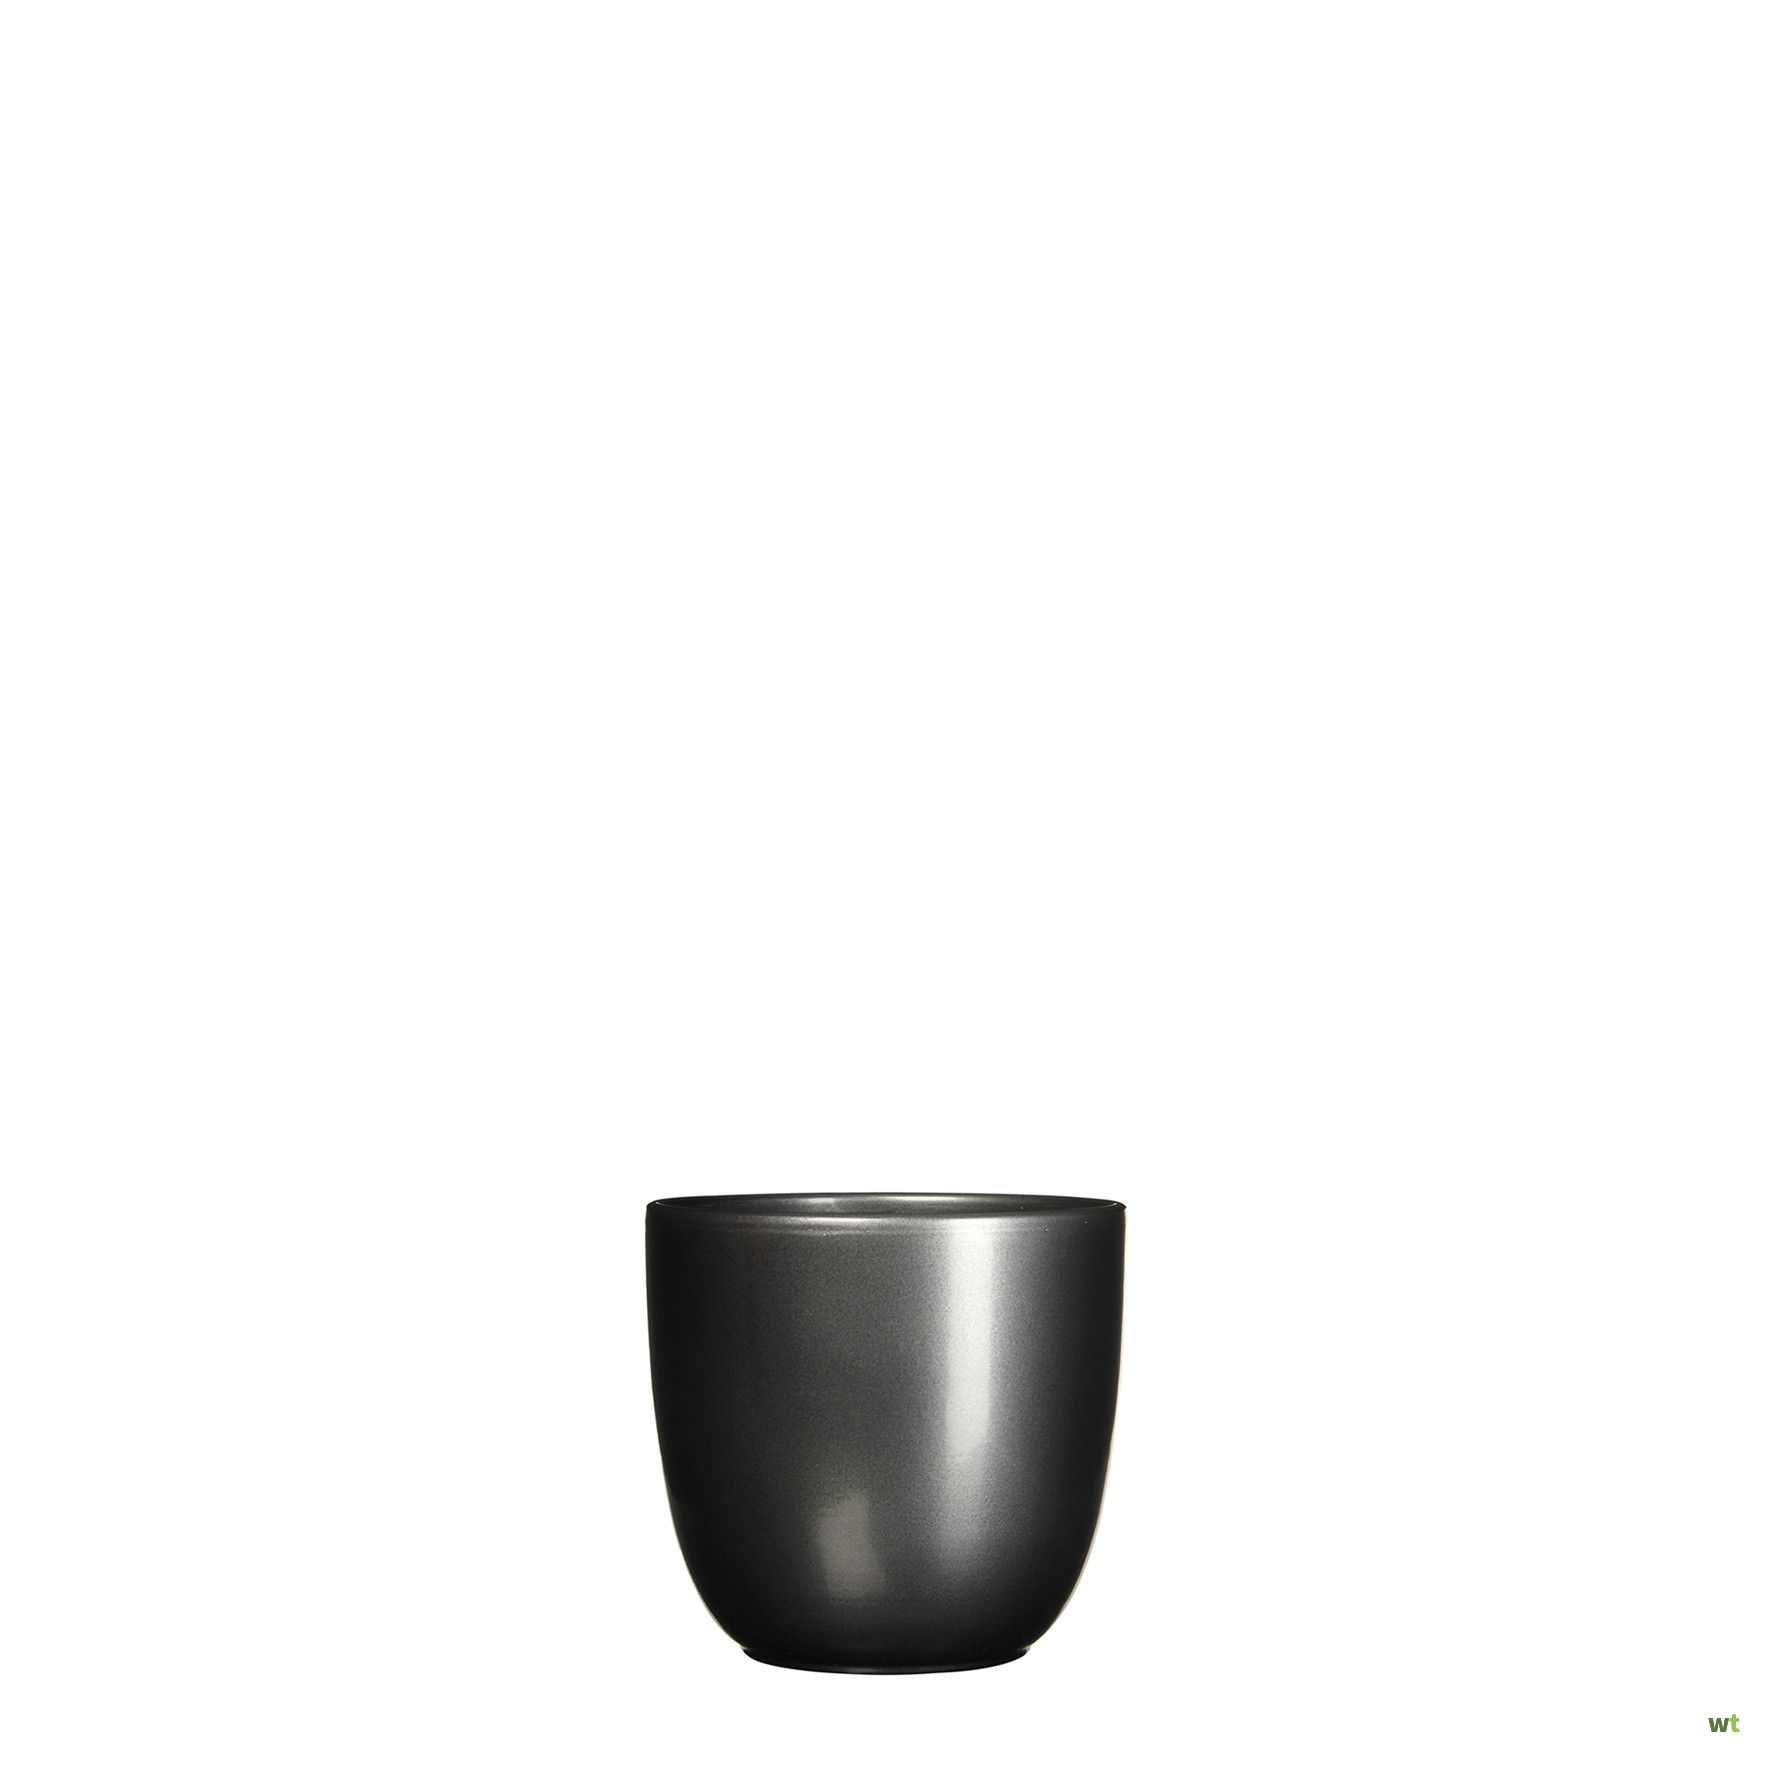 is genoeg Aanleg Modderig Bloempot Pot rond es/7 tusca 7.5 x 8.5 cm antraciet Mica